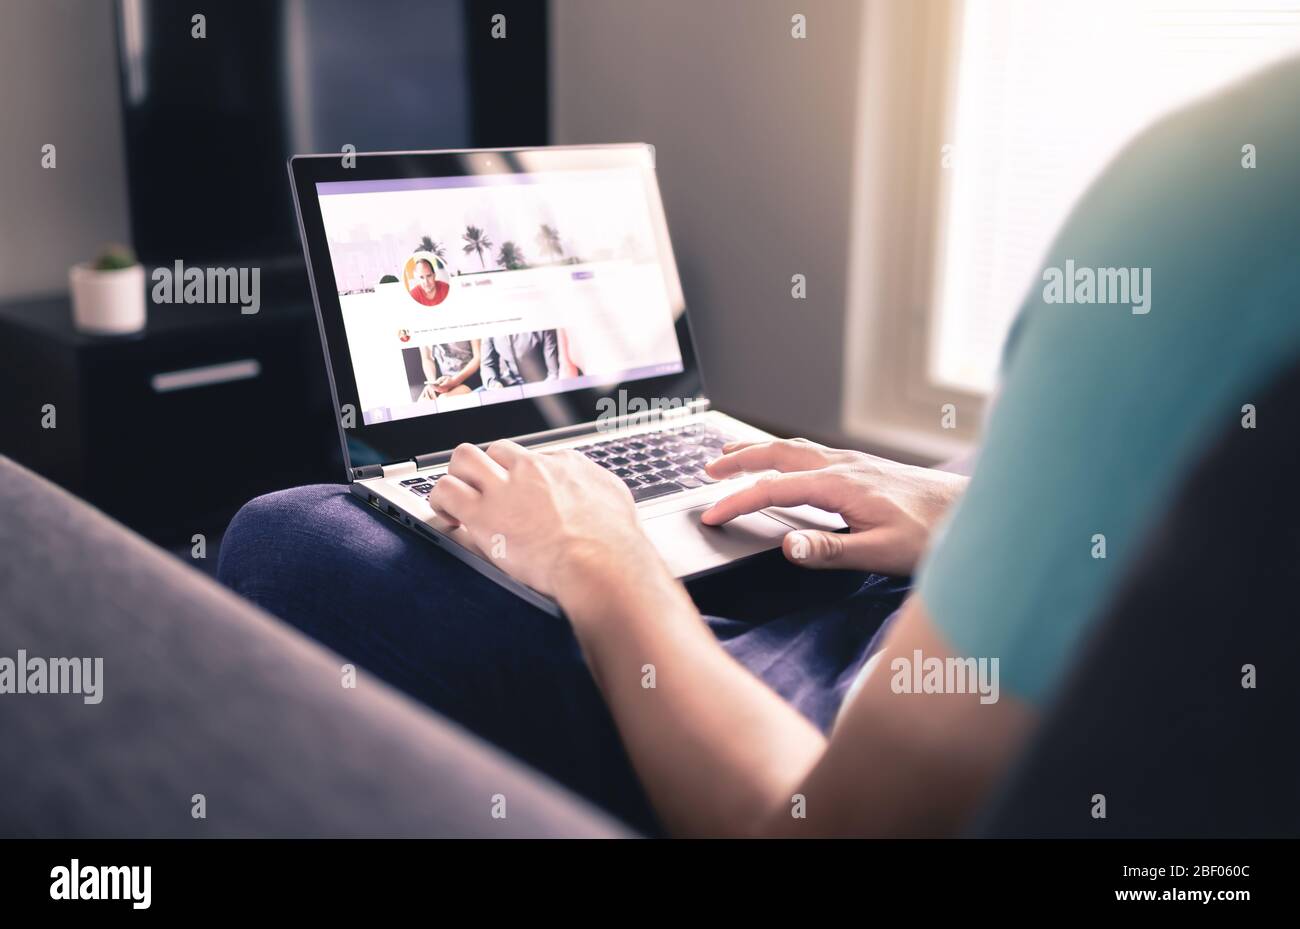 Profil für soziale Medien auf dem Bildschirm. Mann, der zu Hause einen Laptop benutzt. Persönliche Online-Seite. Modell für die Website des Unternehmensnetzwerks. Statusaktualisierung wird geschrieben. Stockfoto